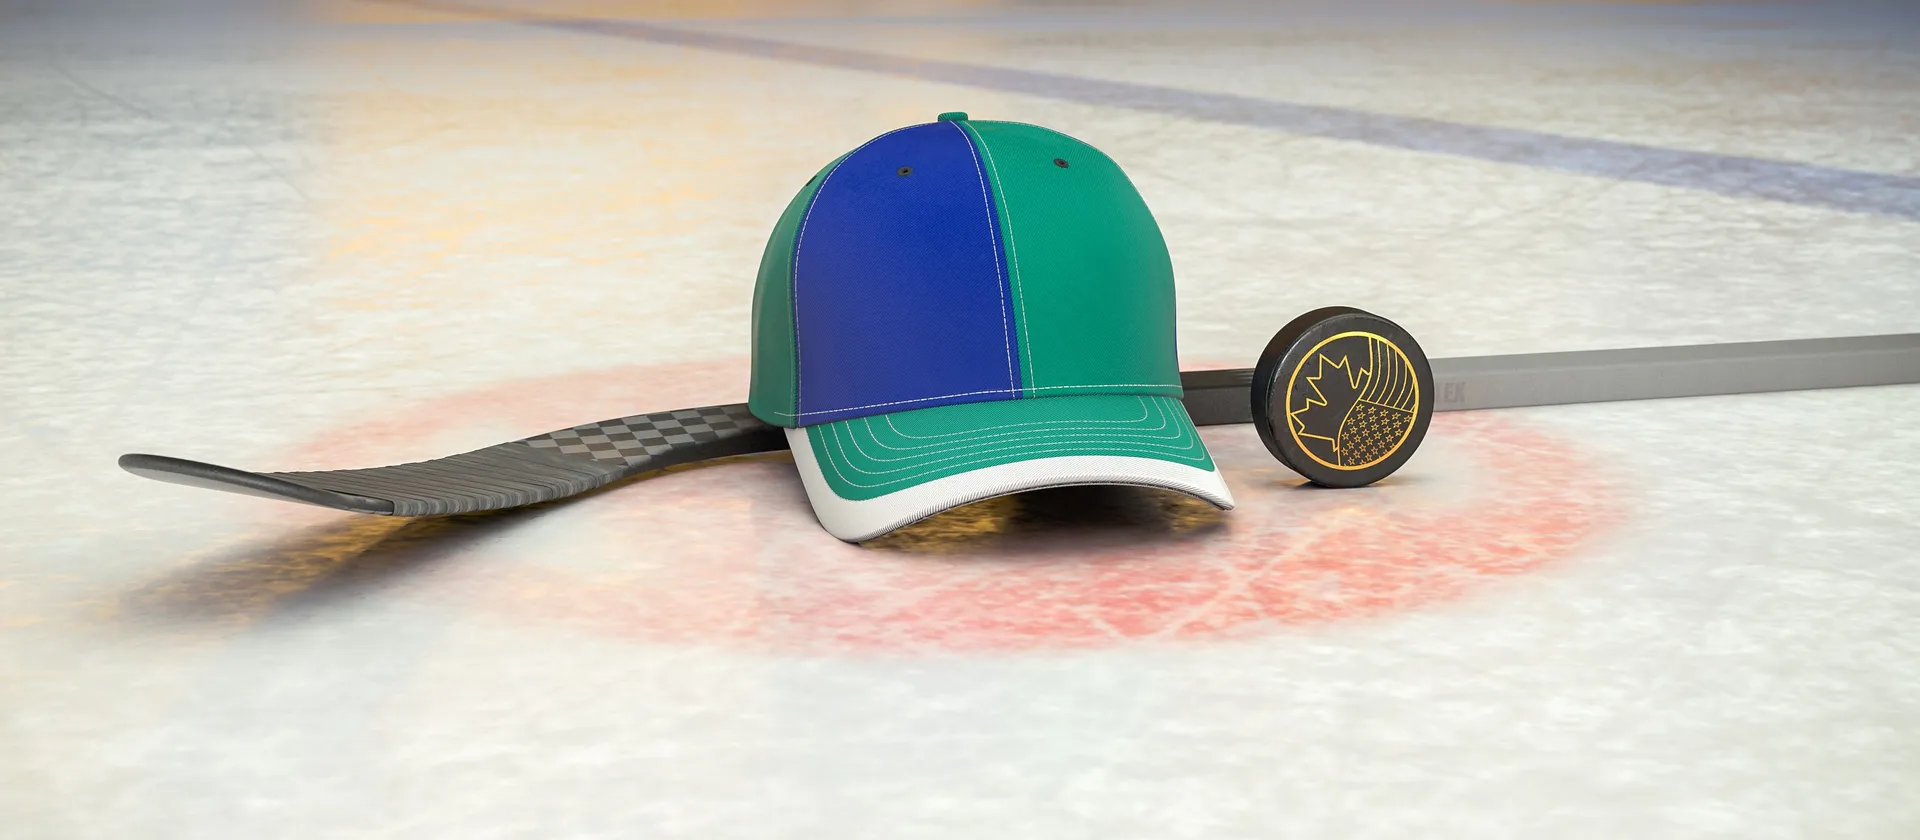 Bild på hockeyklubba, puck och en supporterkeps med NHL-laget Vancouver Canucks färger